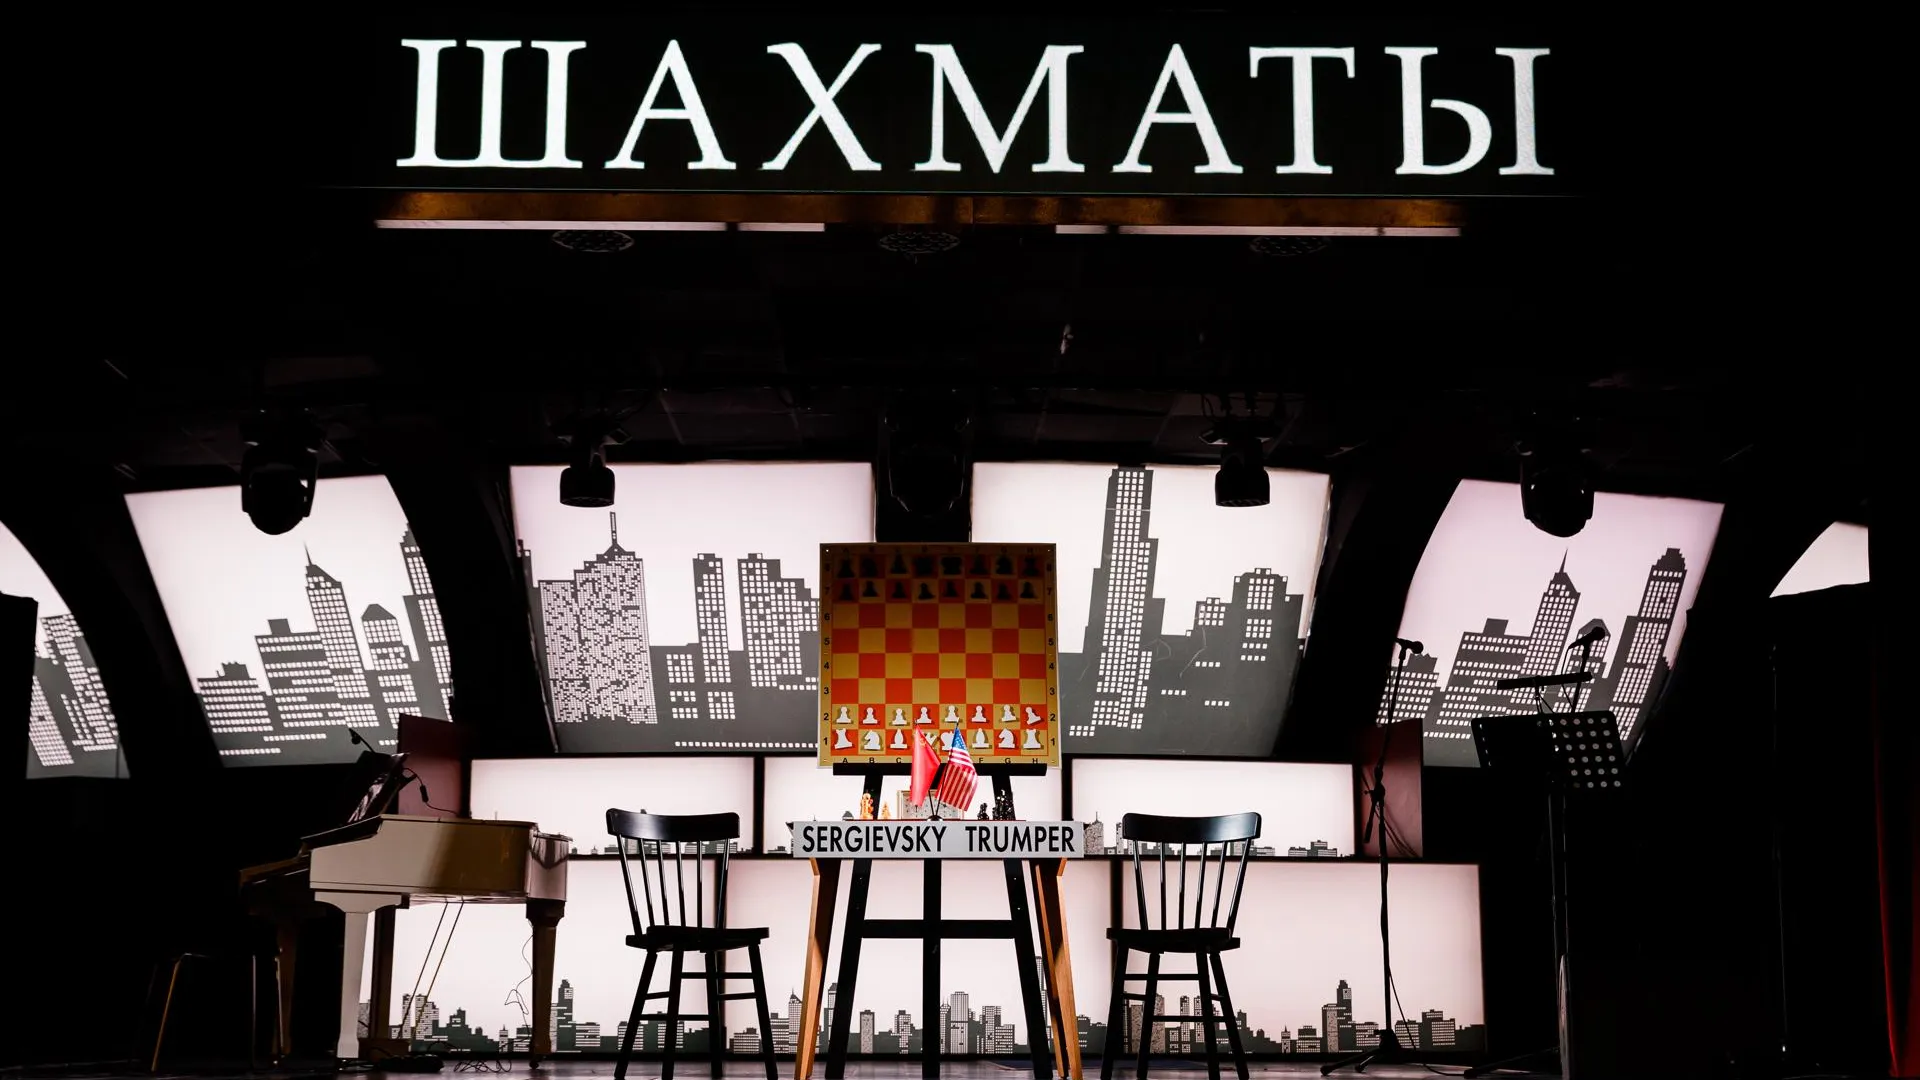 Выходные в Москве 16–18 октября: мюзикл «Шахматы» и The Beatles Festival